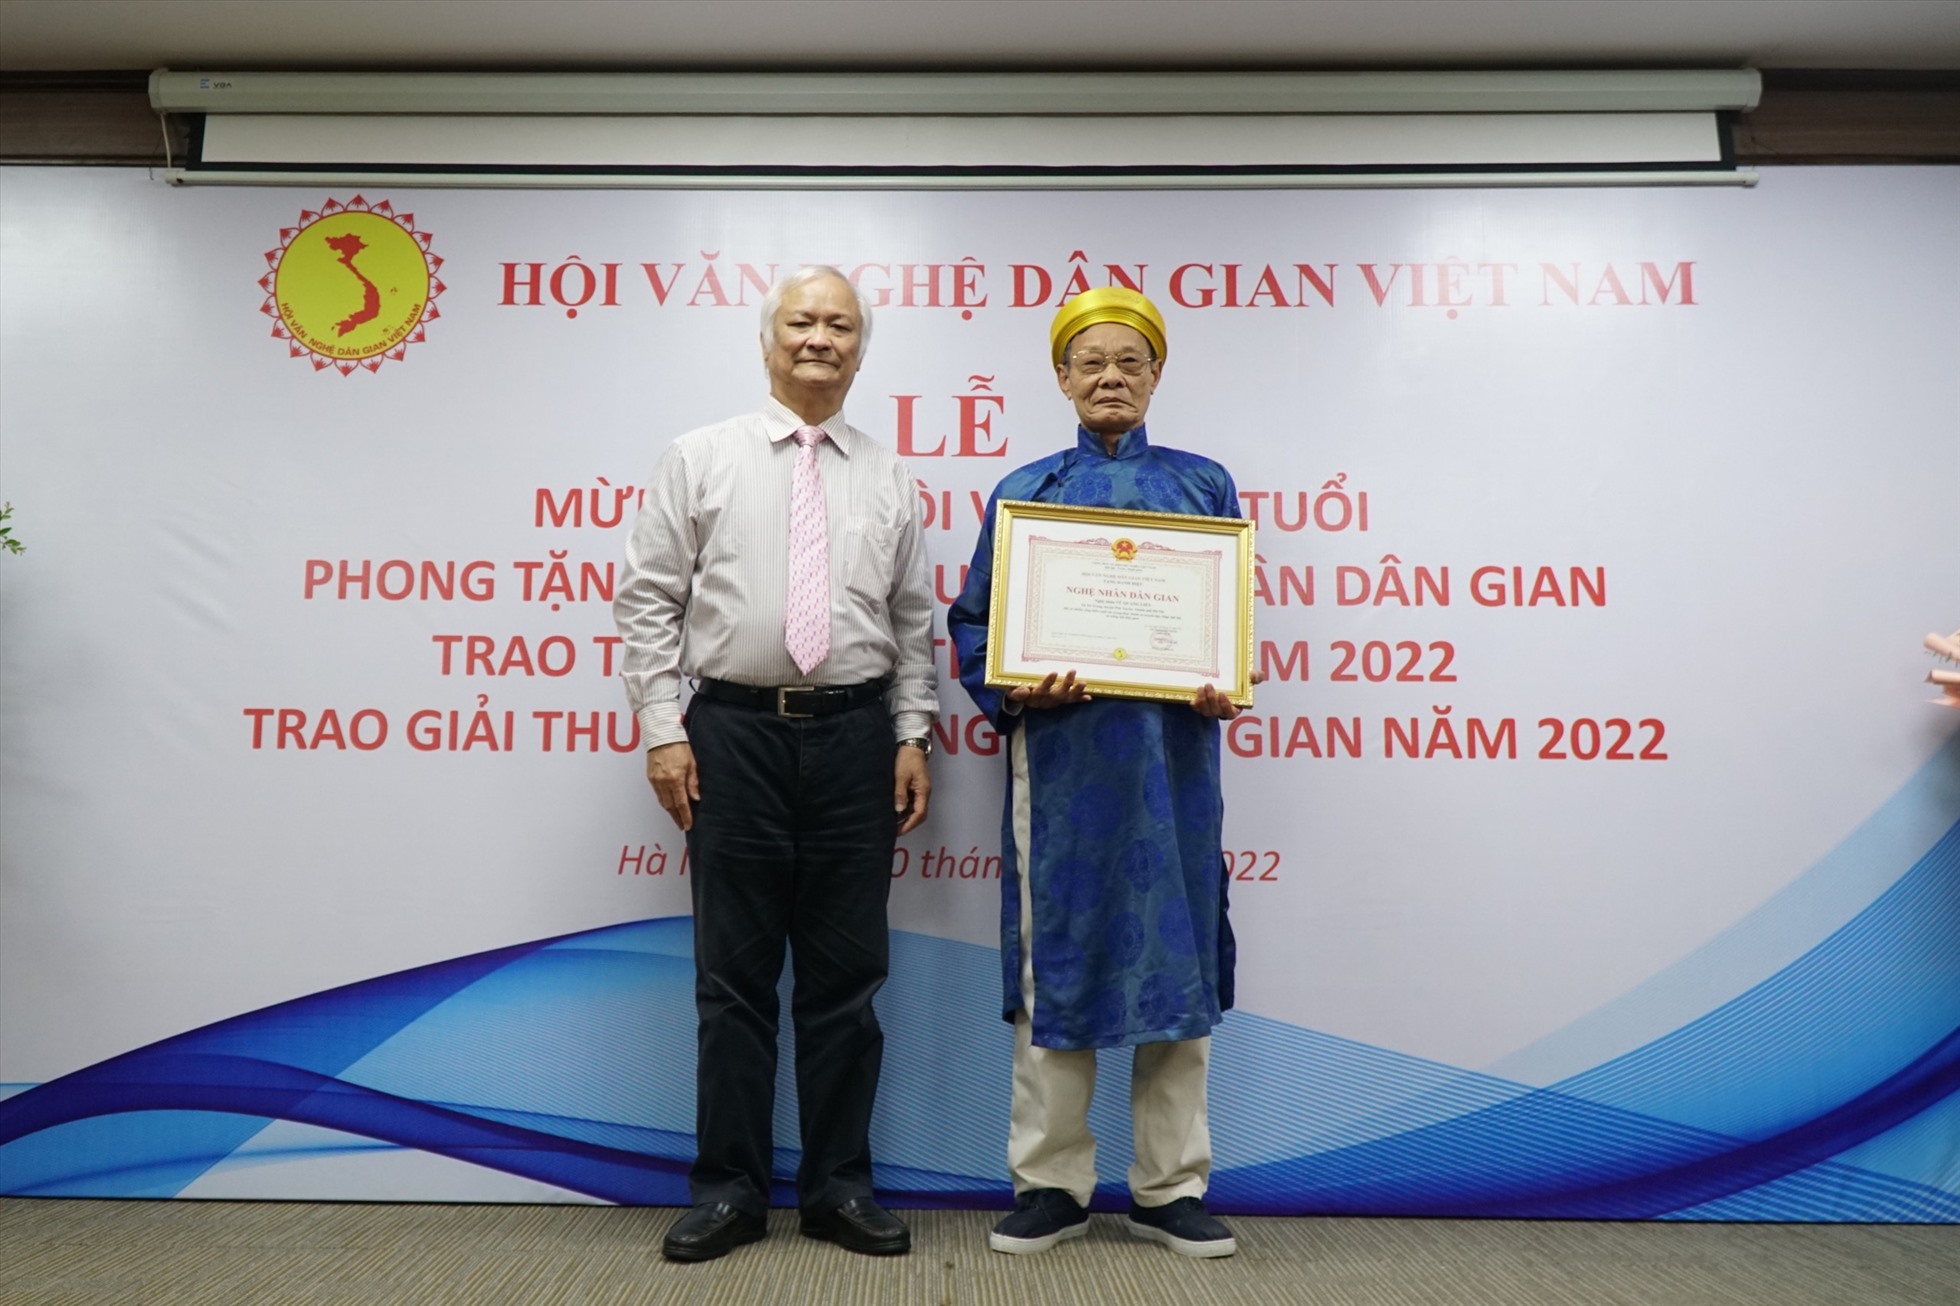 Ông Vũ Quang Liễn được tặng danh hiệu Nghệ nhân dân gian và Kỉ niệm chương Vì sự nghiệp văn học nghệ thuật dân gian Việt Nam. Ảnh: Thảo Quyên